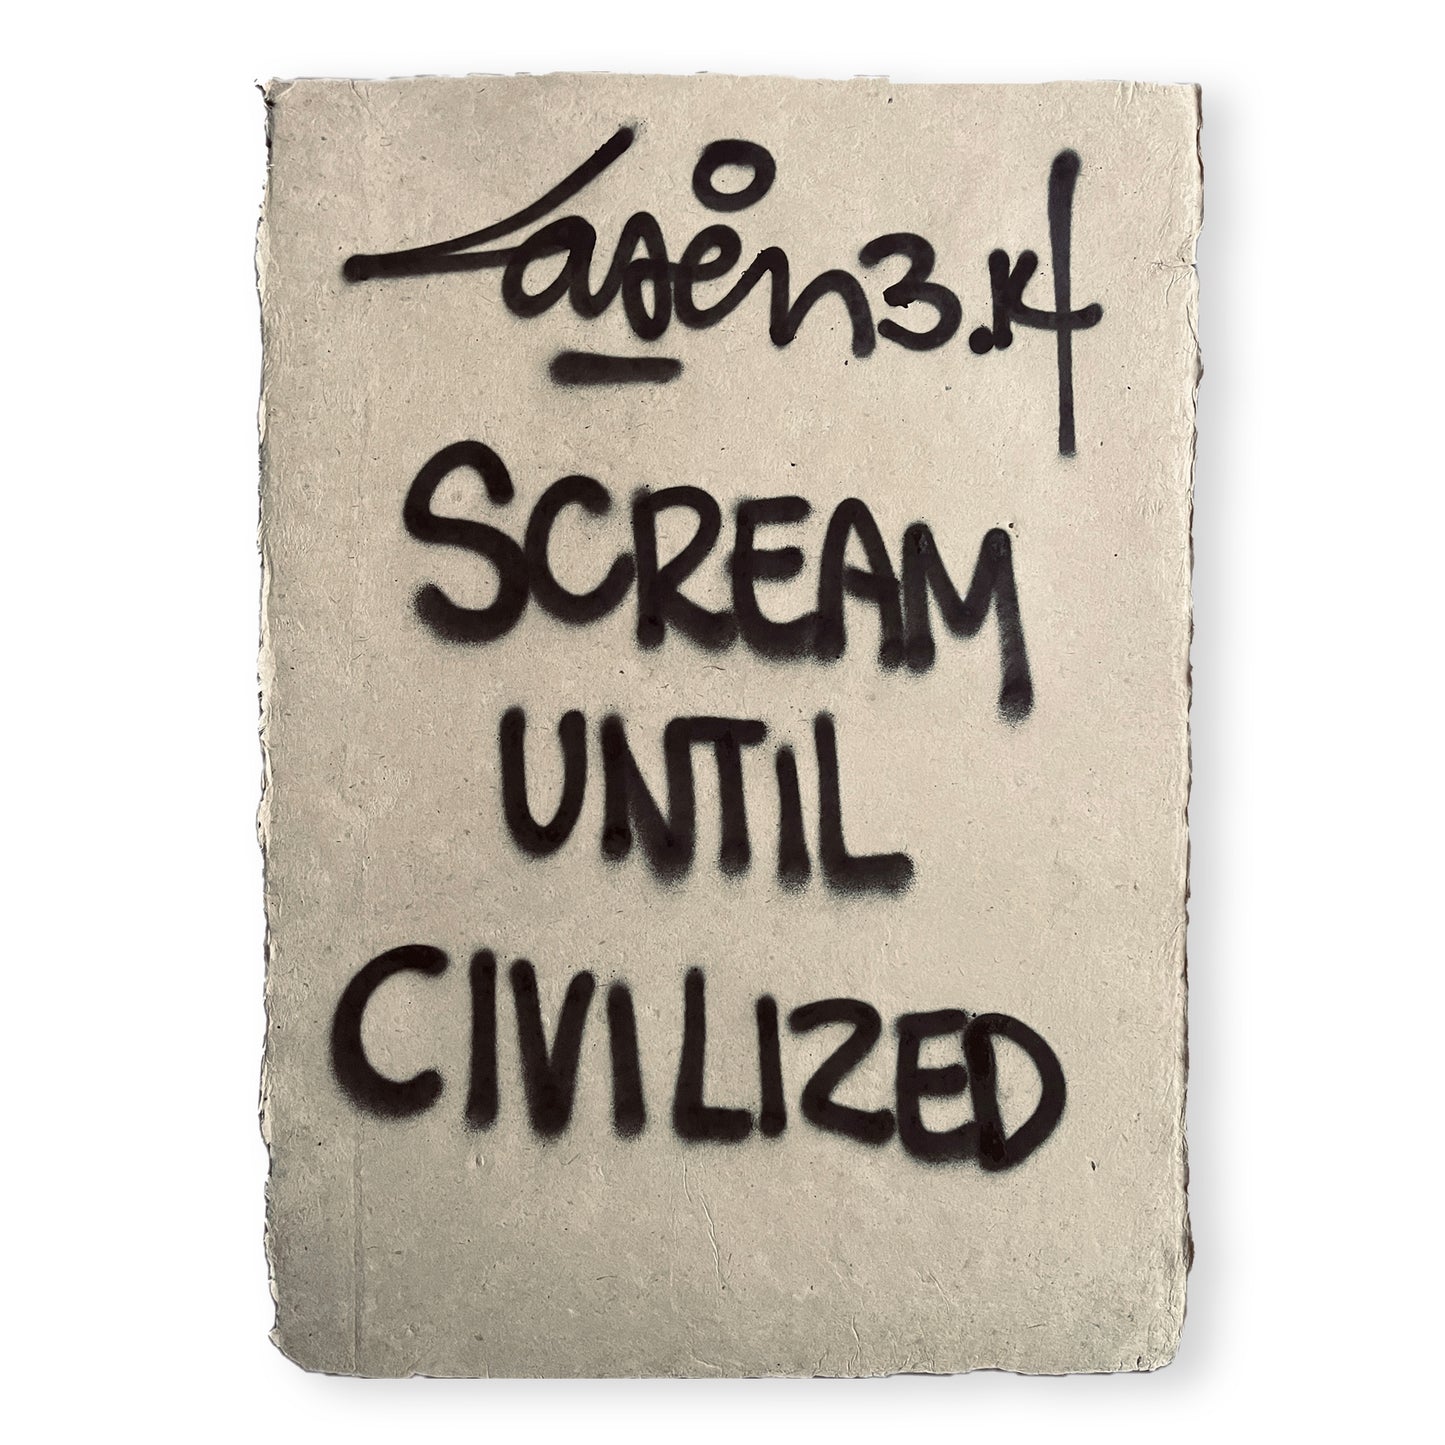 Scream Until Civilized